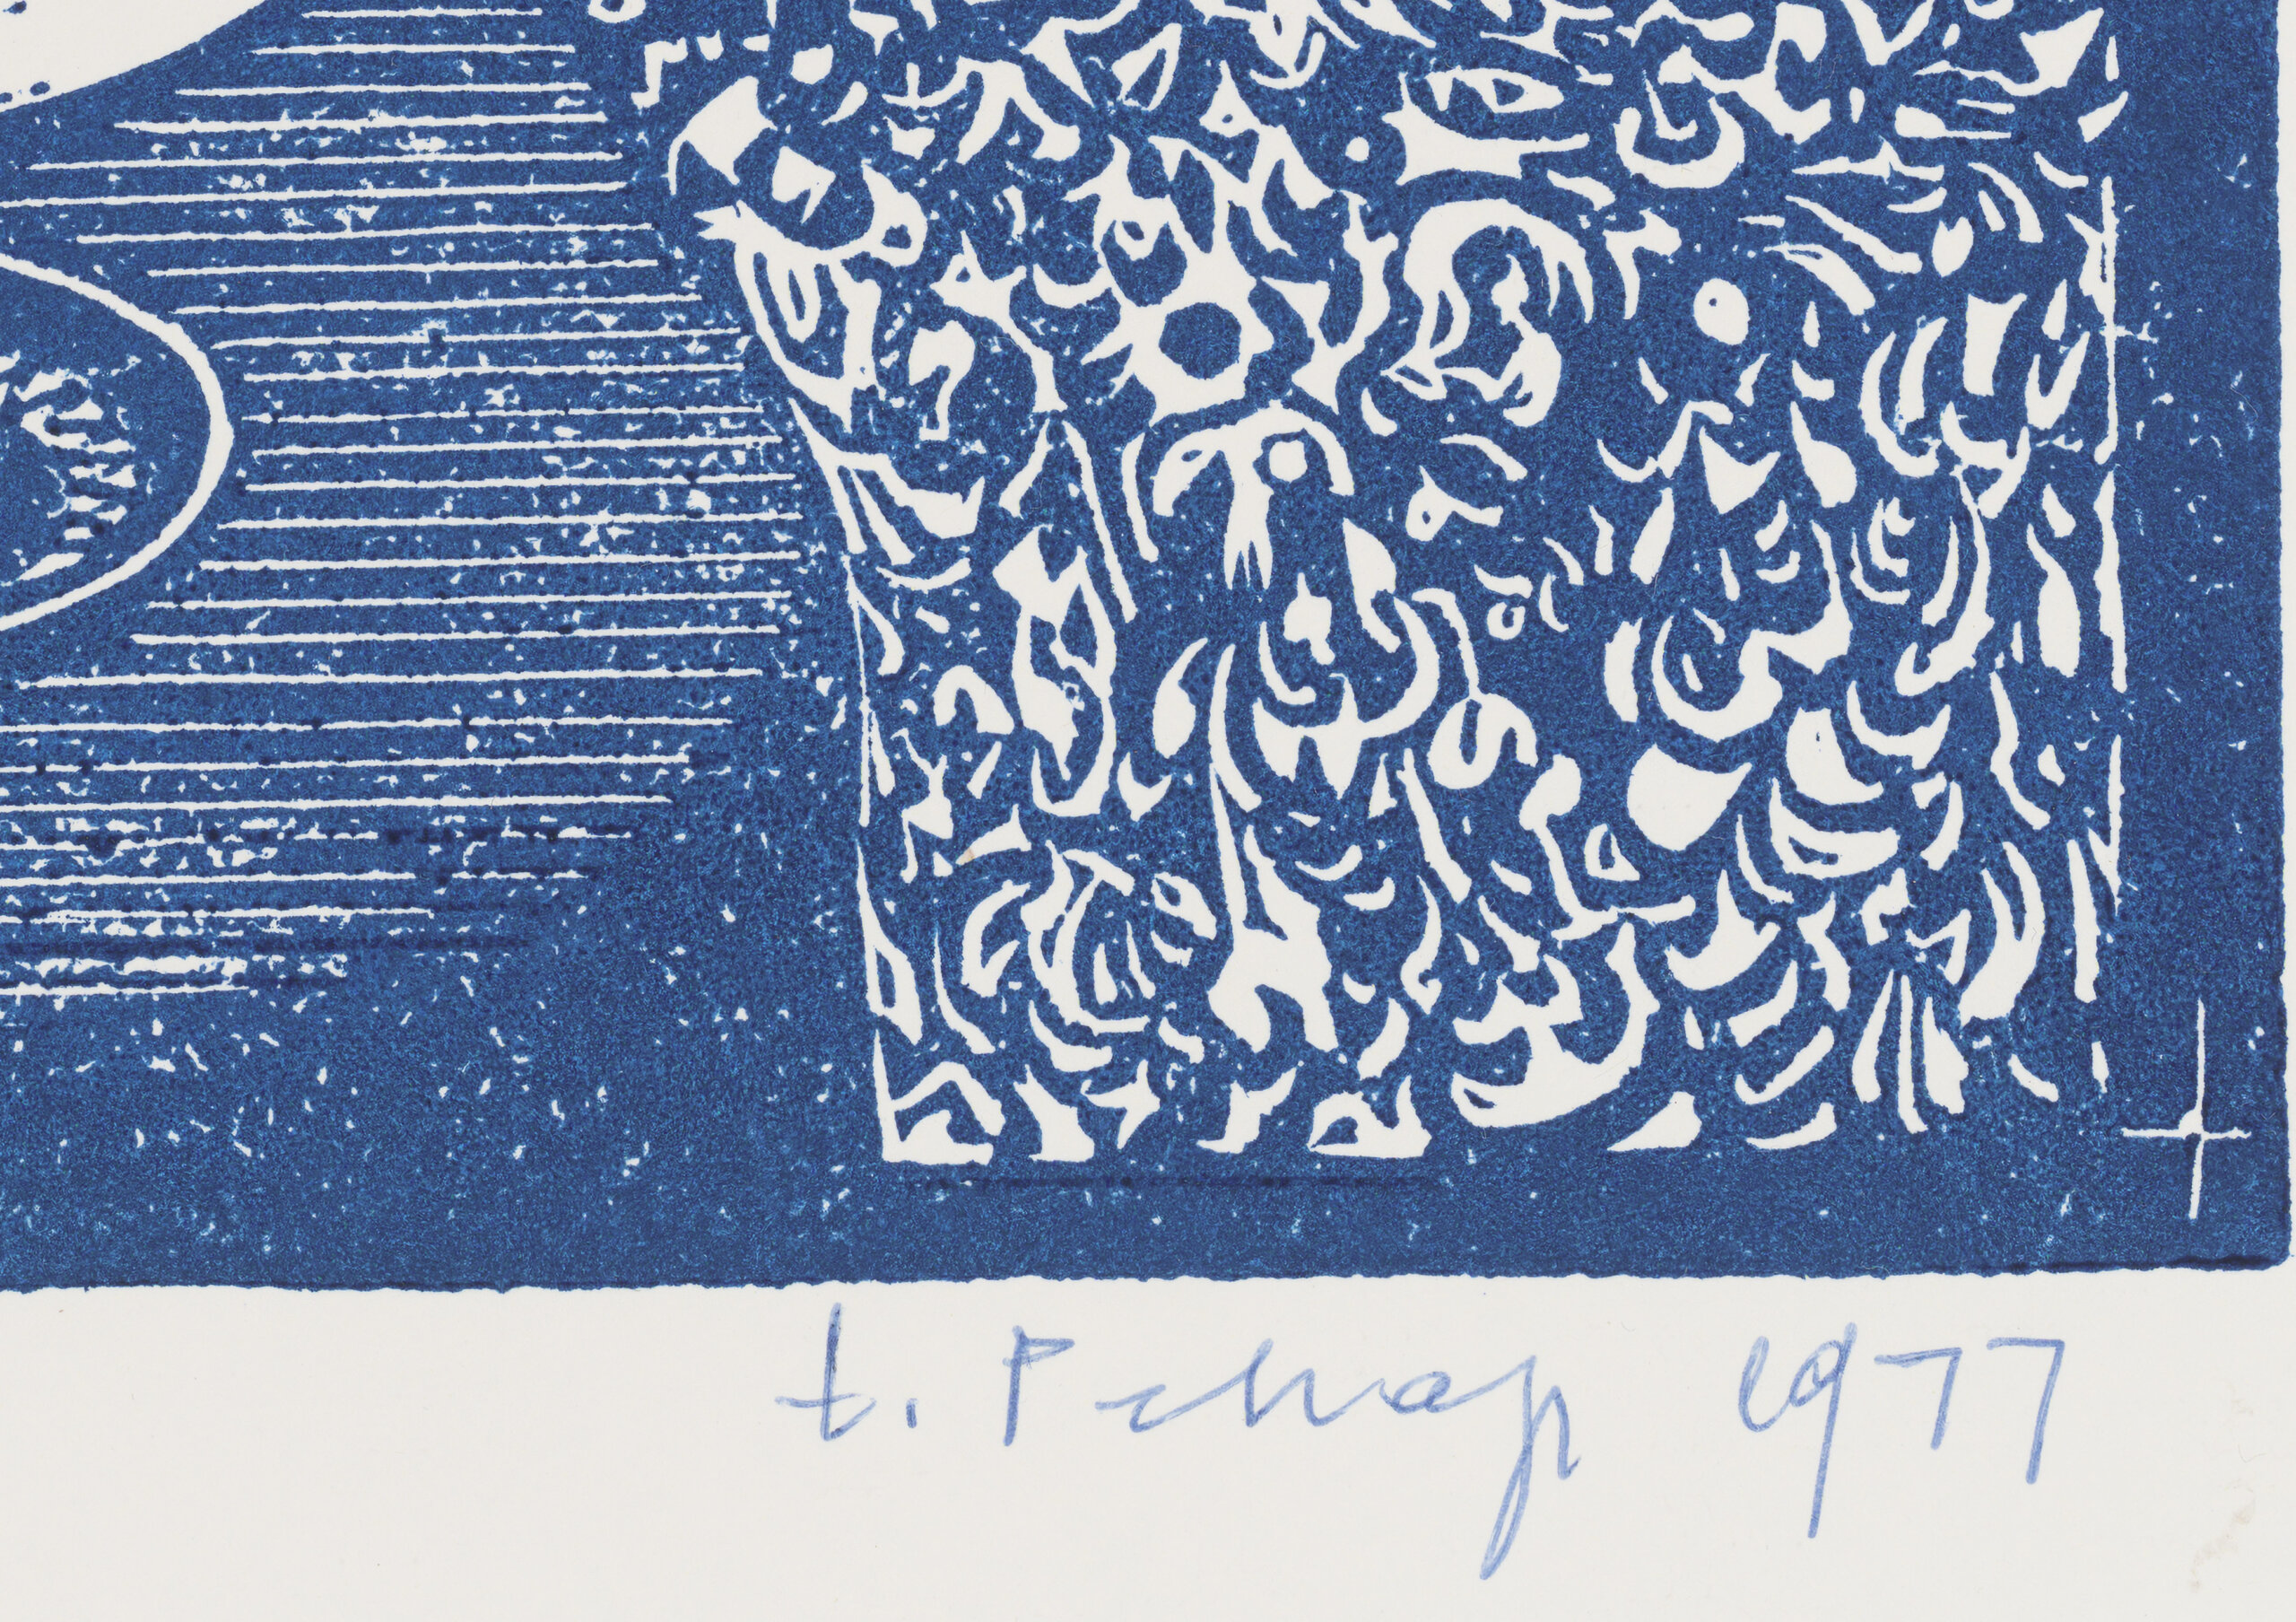 Erich Pehap “Natüürmort sinisega” 1977. 32 x 27,7 cm